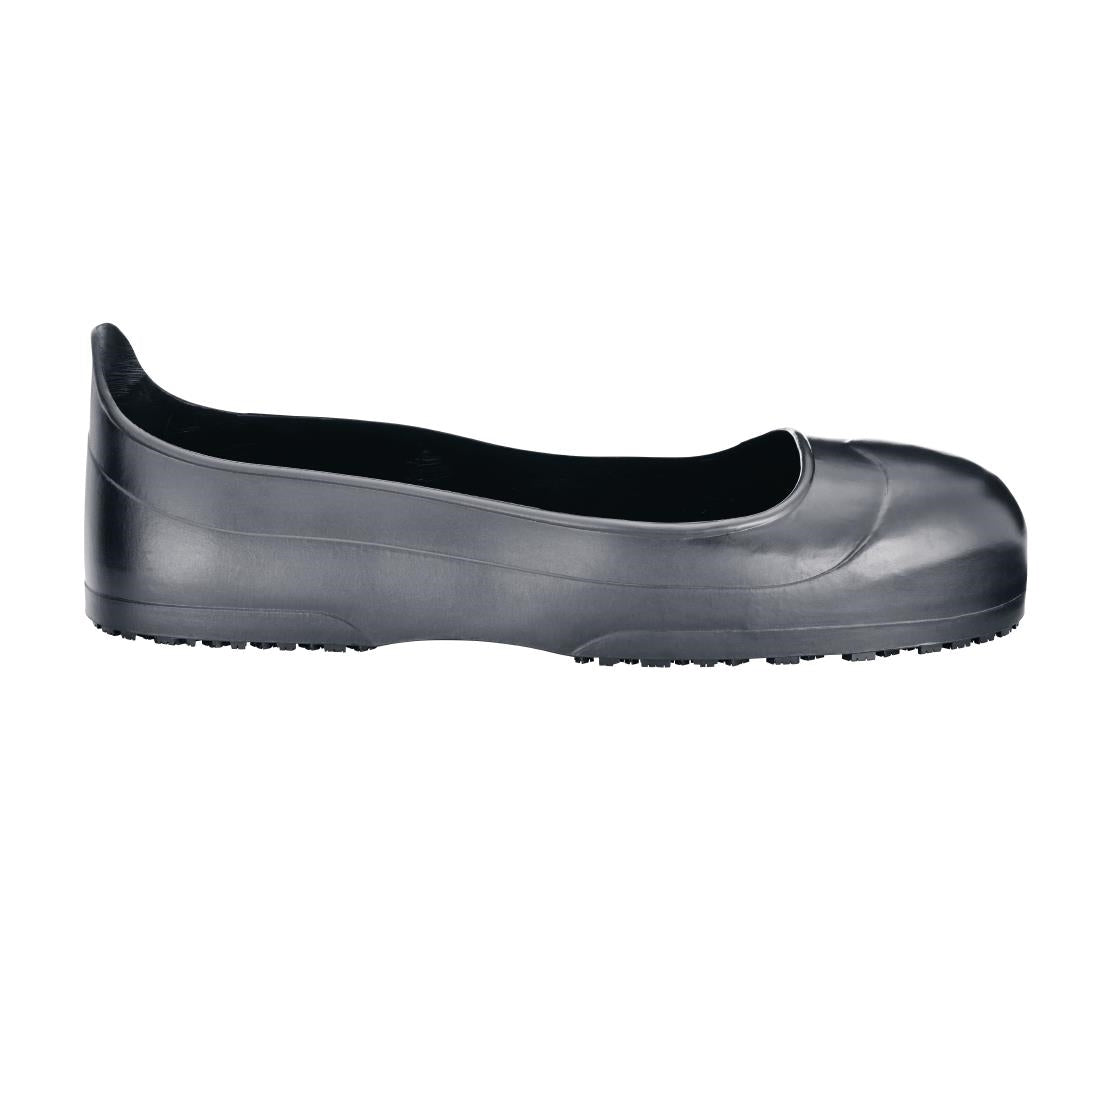 BB614-LP Shoes for Crews Crewguard Overshoes Steel Toe Cap Size LP